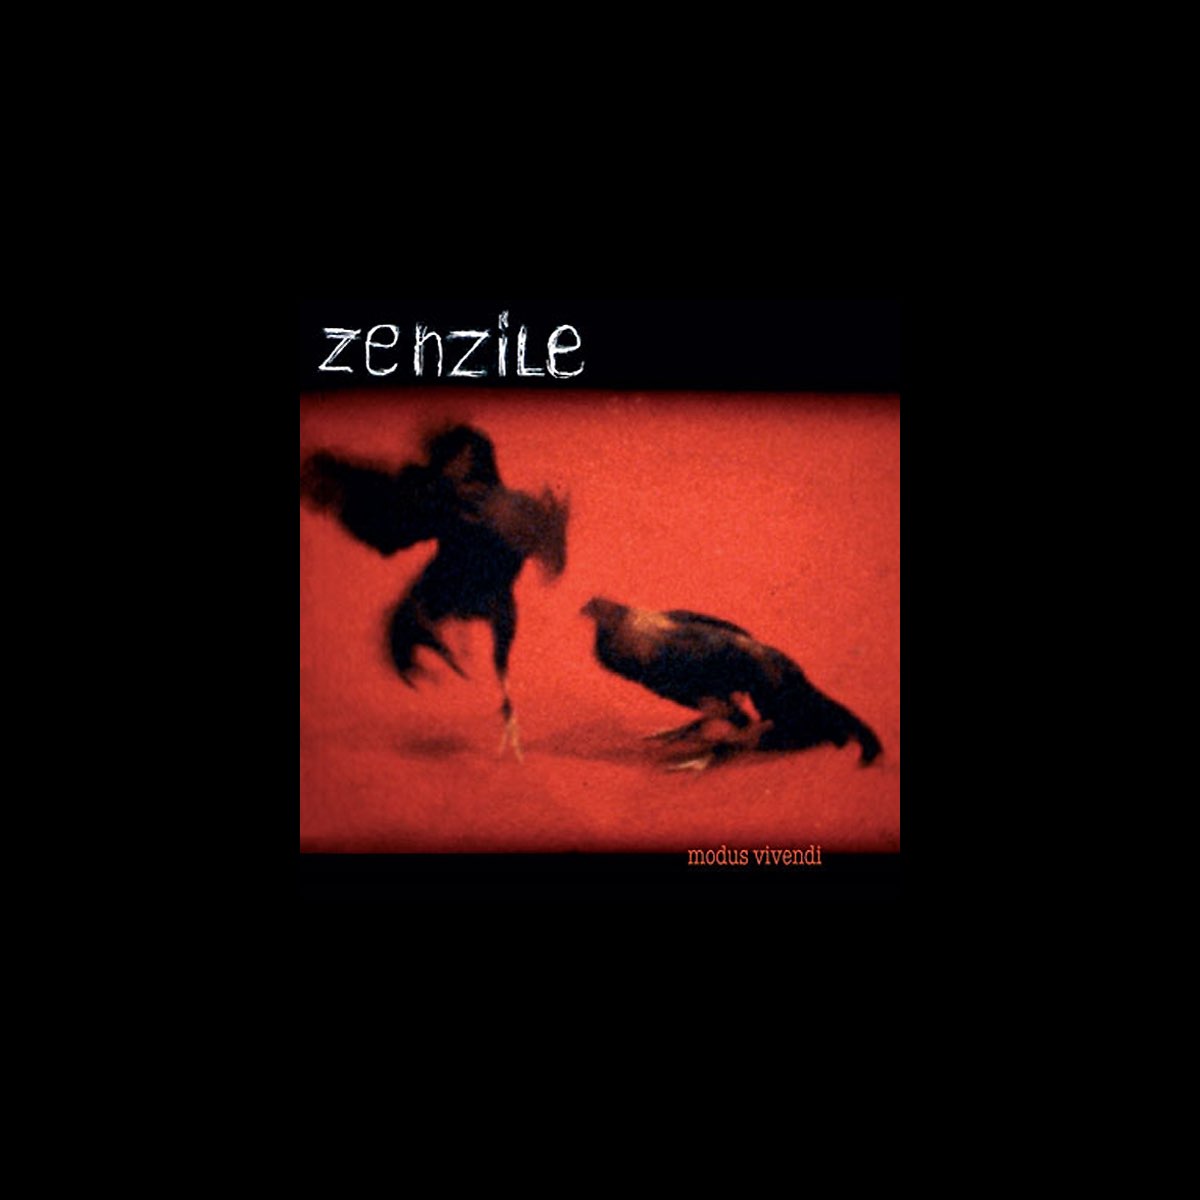 Modus Vivendi - Album by Zenzile - Apple Music